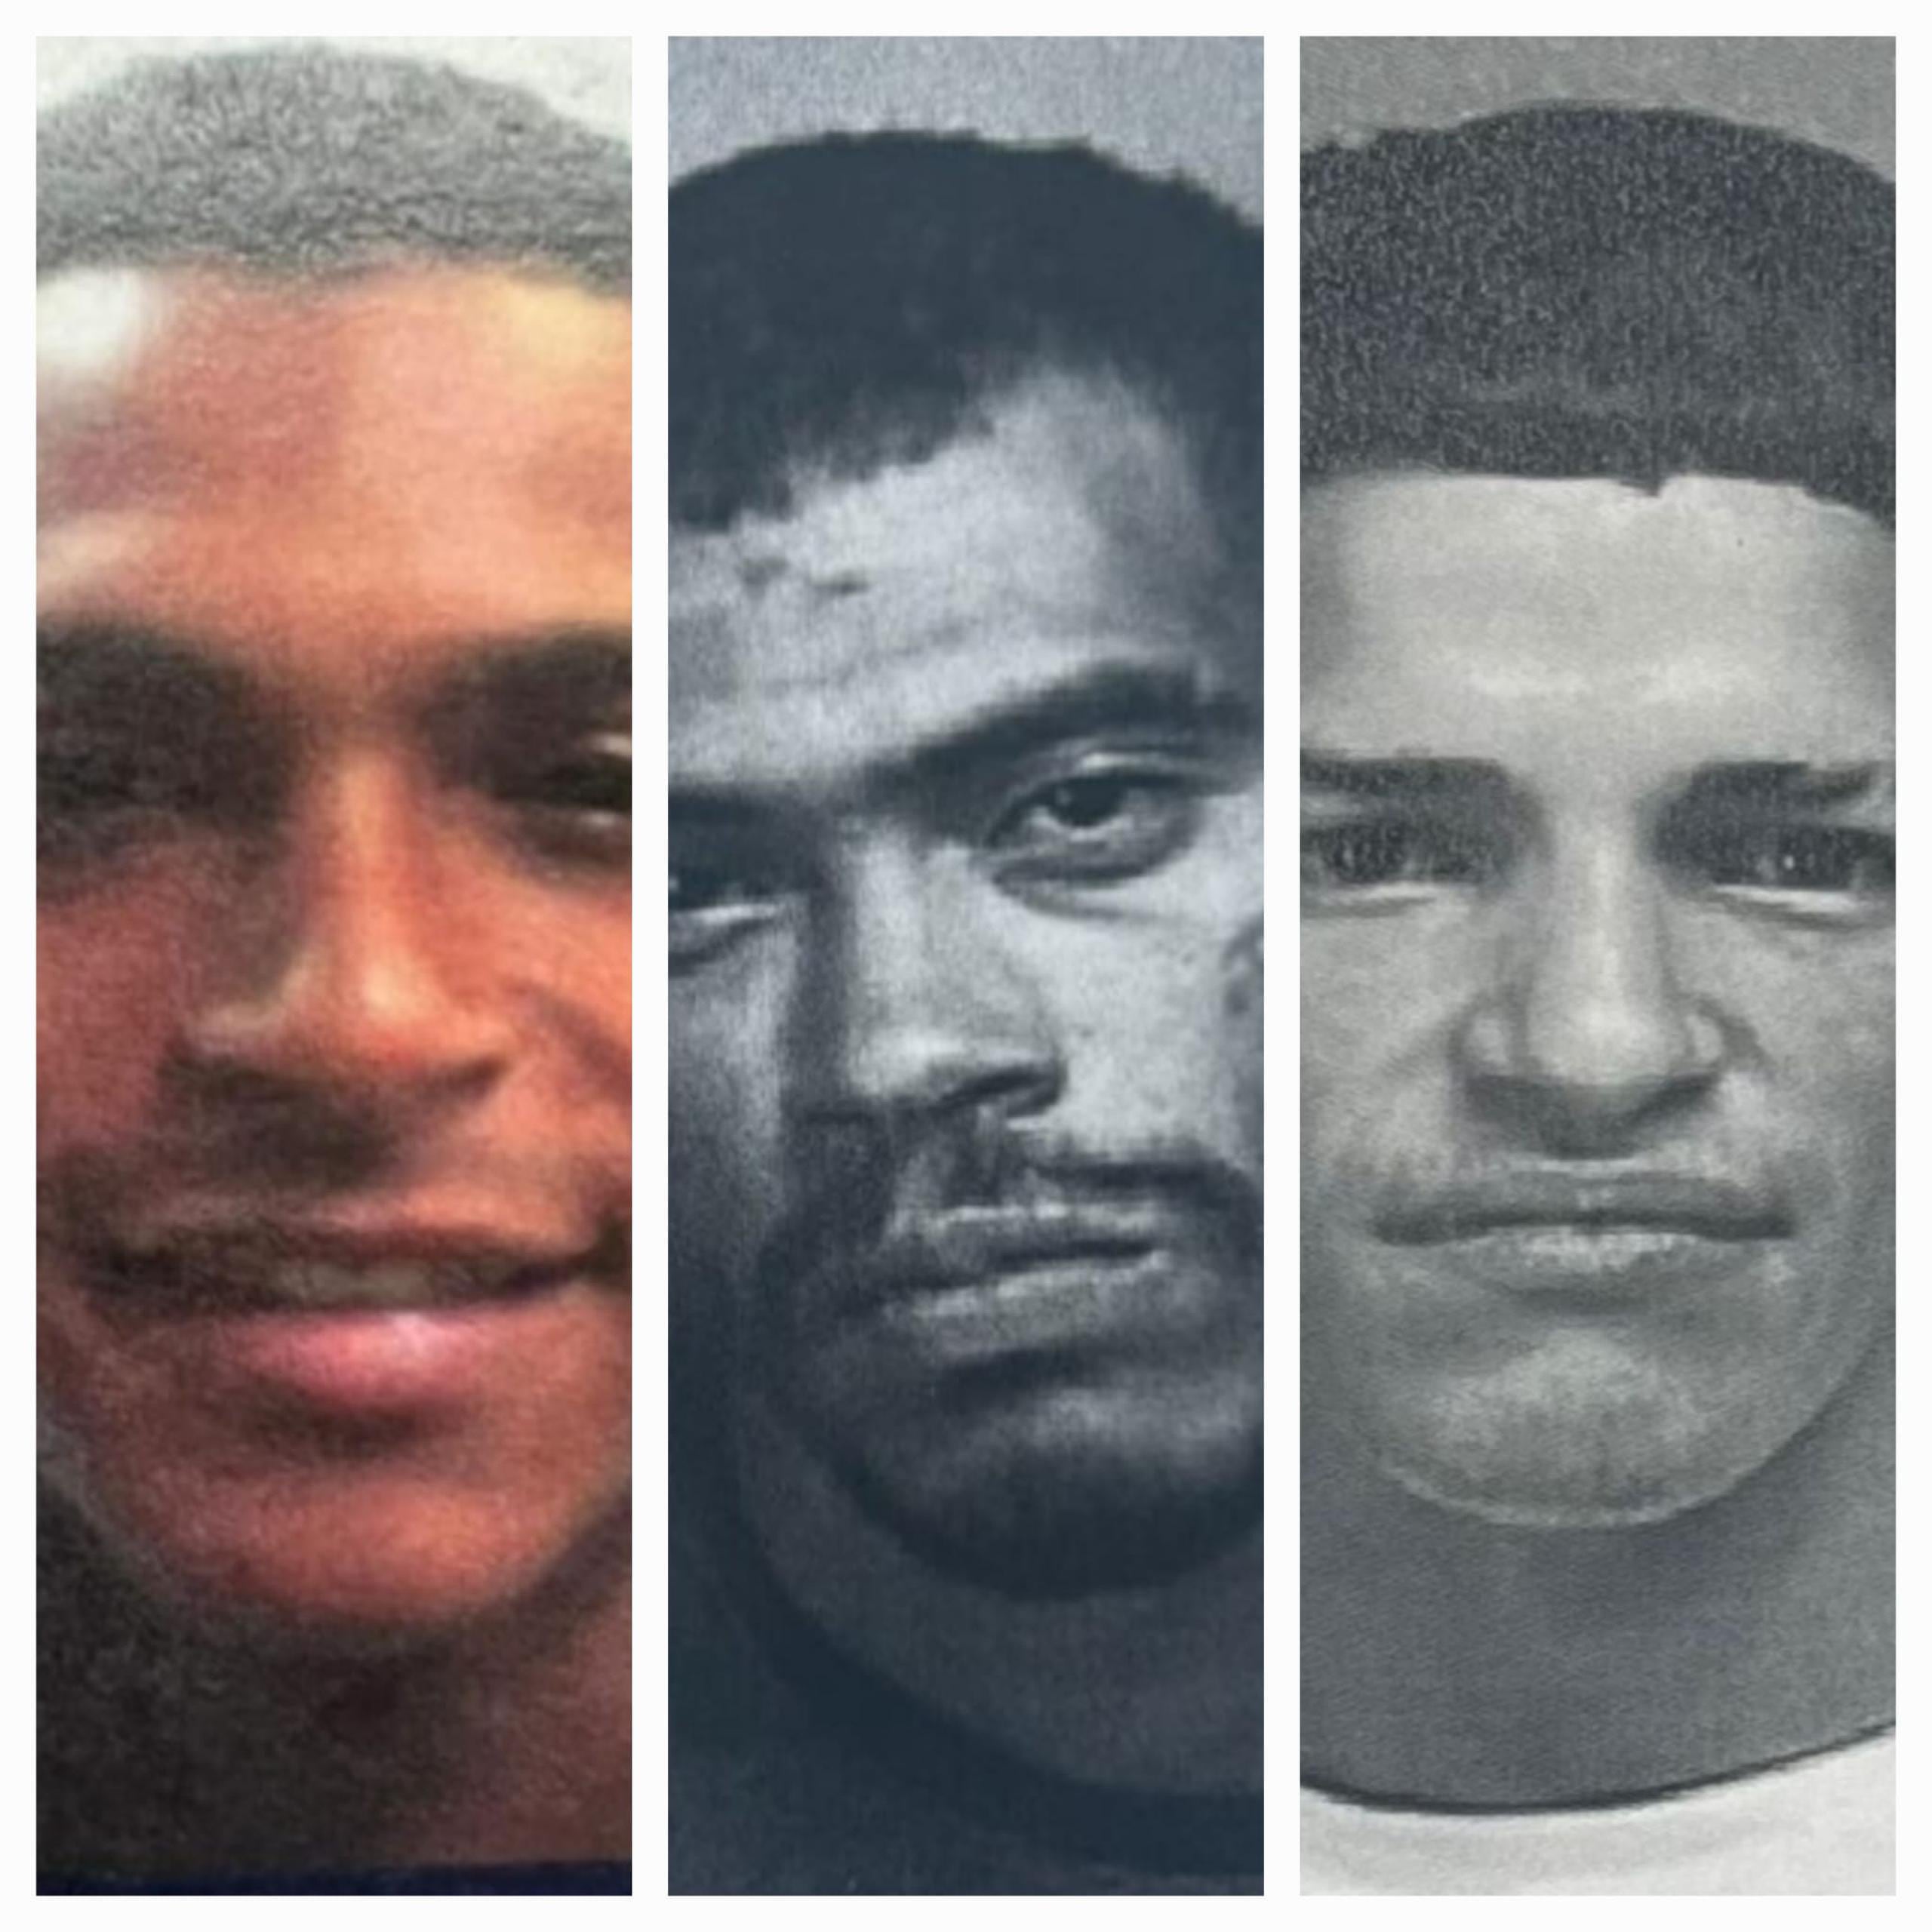 La División de Arrestos Especiales de Bayamón, capturaron a los fugitivos Josué Cantres Ríos, Javier Ginés Rosario y Luis J. Maldonado Rivera, durante varias intervenciones.